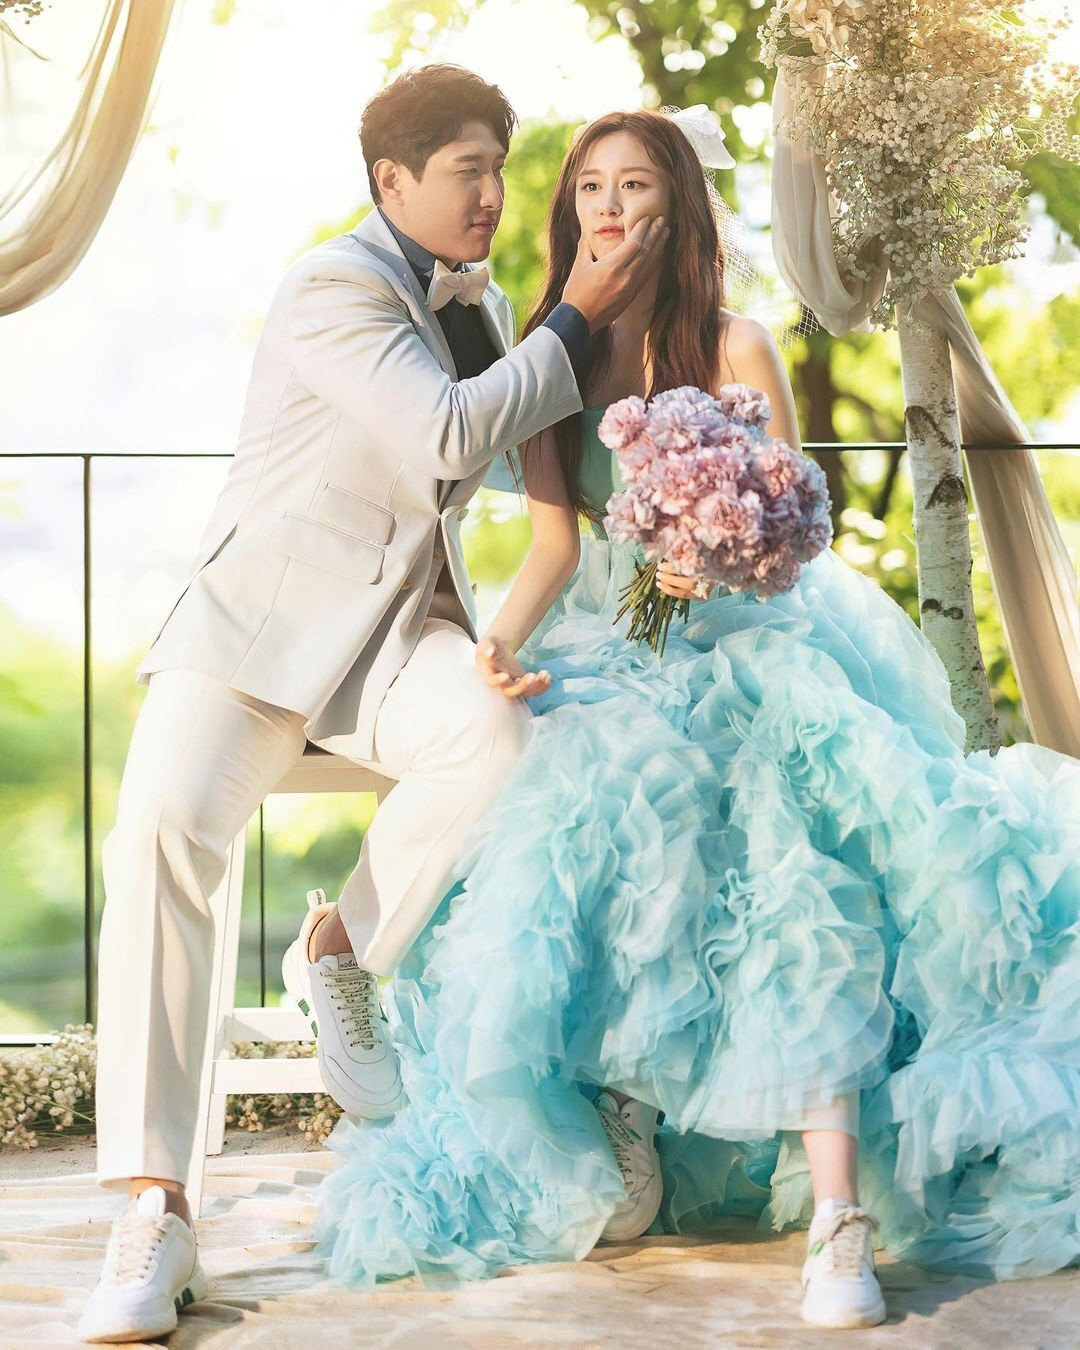 T-ara's Jiyeon And Hwang Jae Gyun Share Beautiful Wedding Photos | Soompi